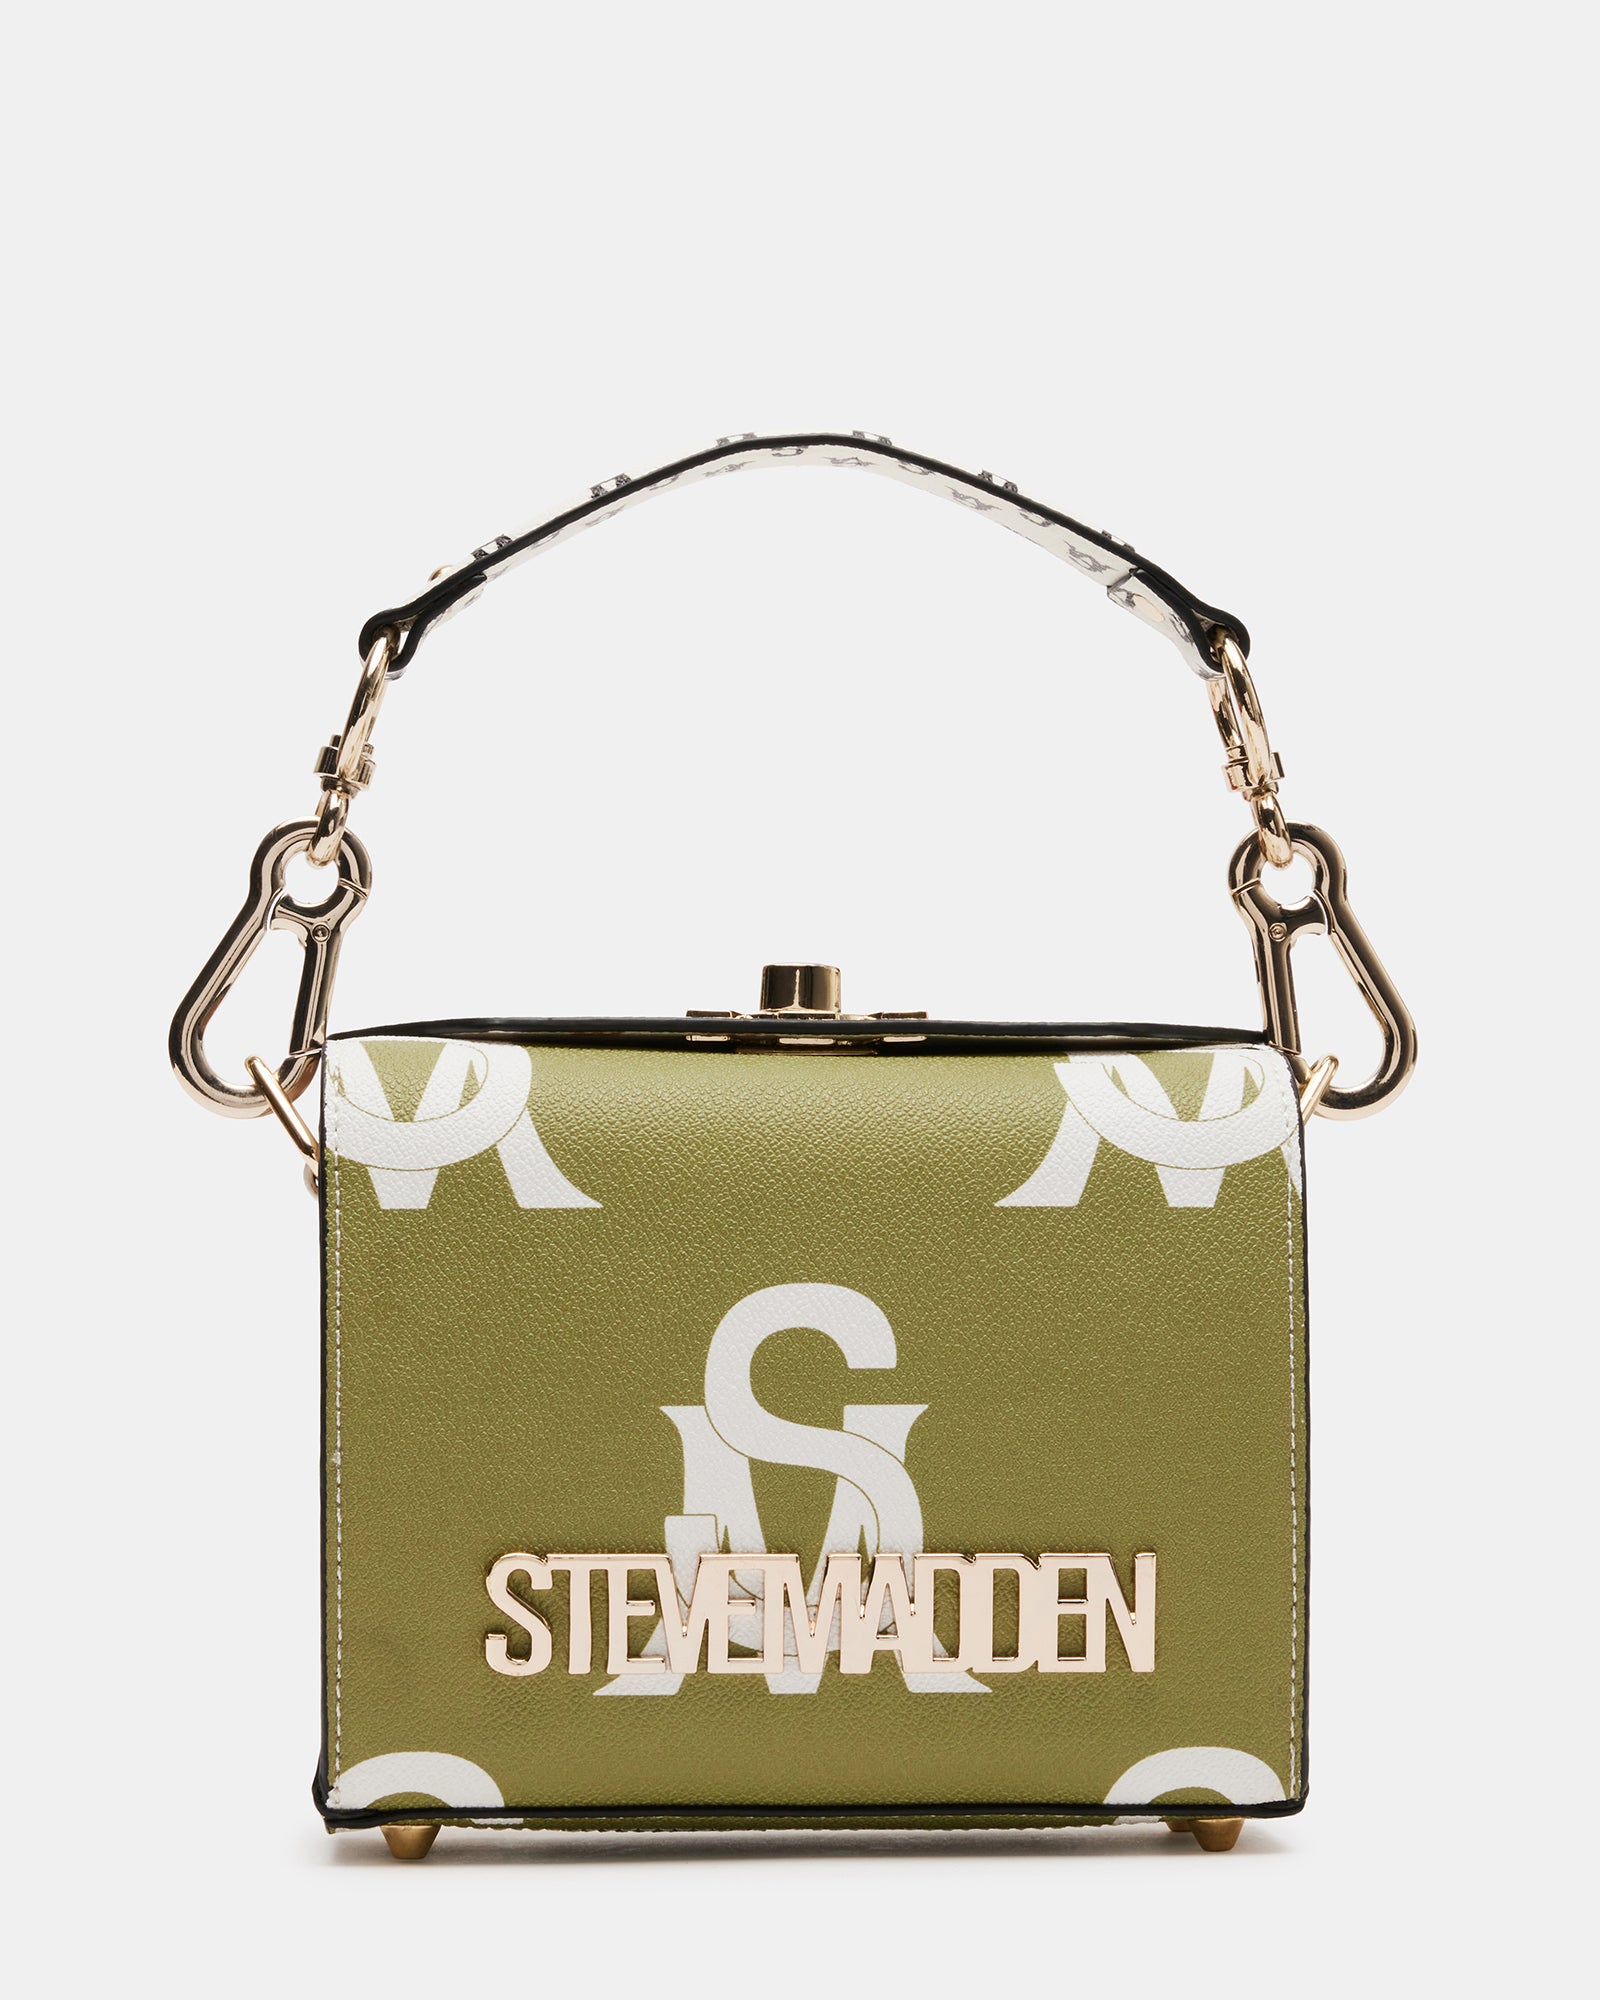 Steve Madden Speedy Logo Satchel  Steve madden bags, Satchel, Fashion  design